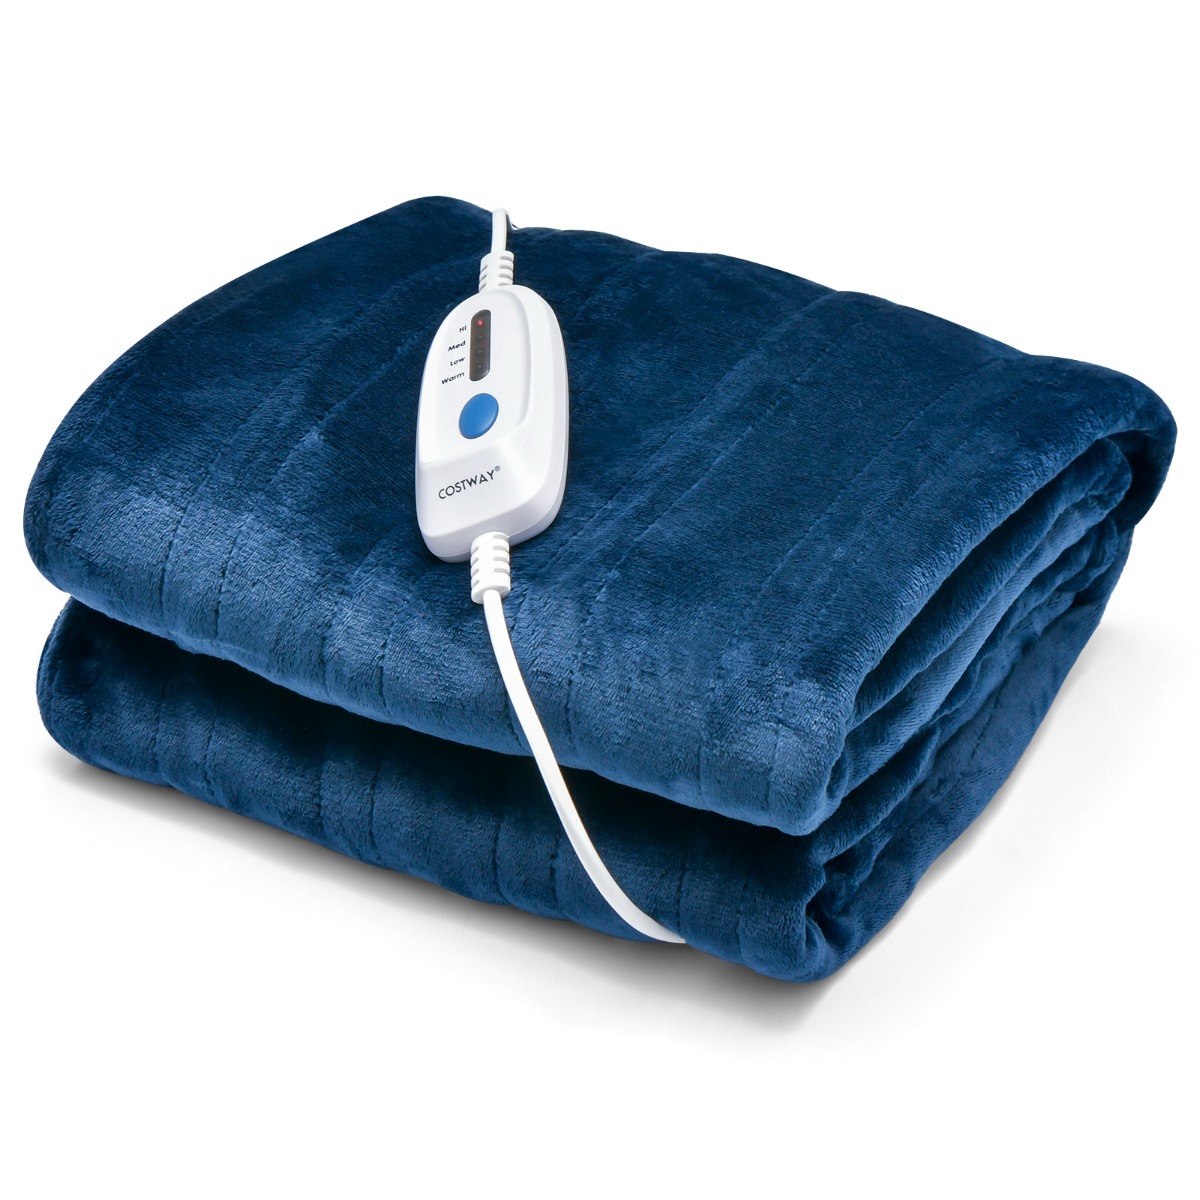 Warmtedeken Elektrisch verwarmde deken met 4 warmtestanden 130 x 180 cm blauw